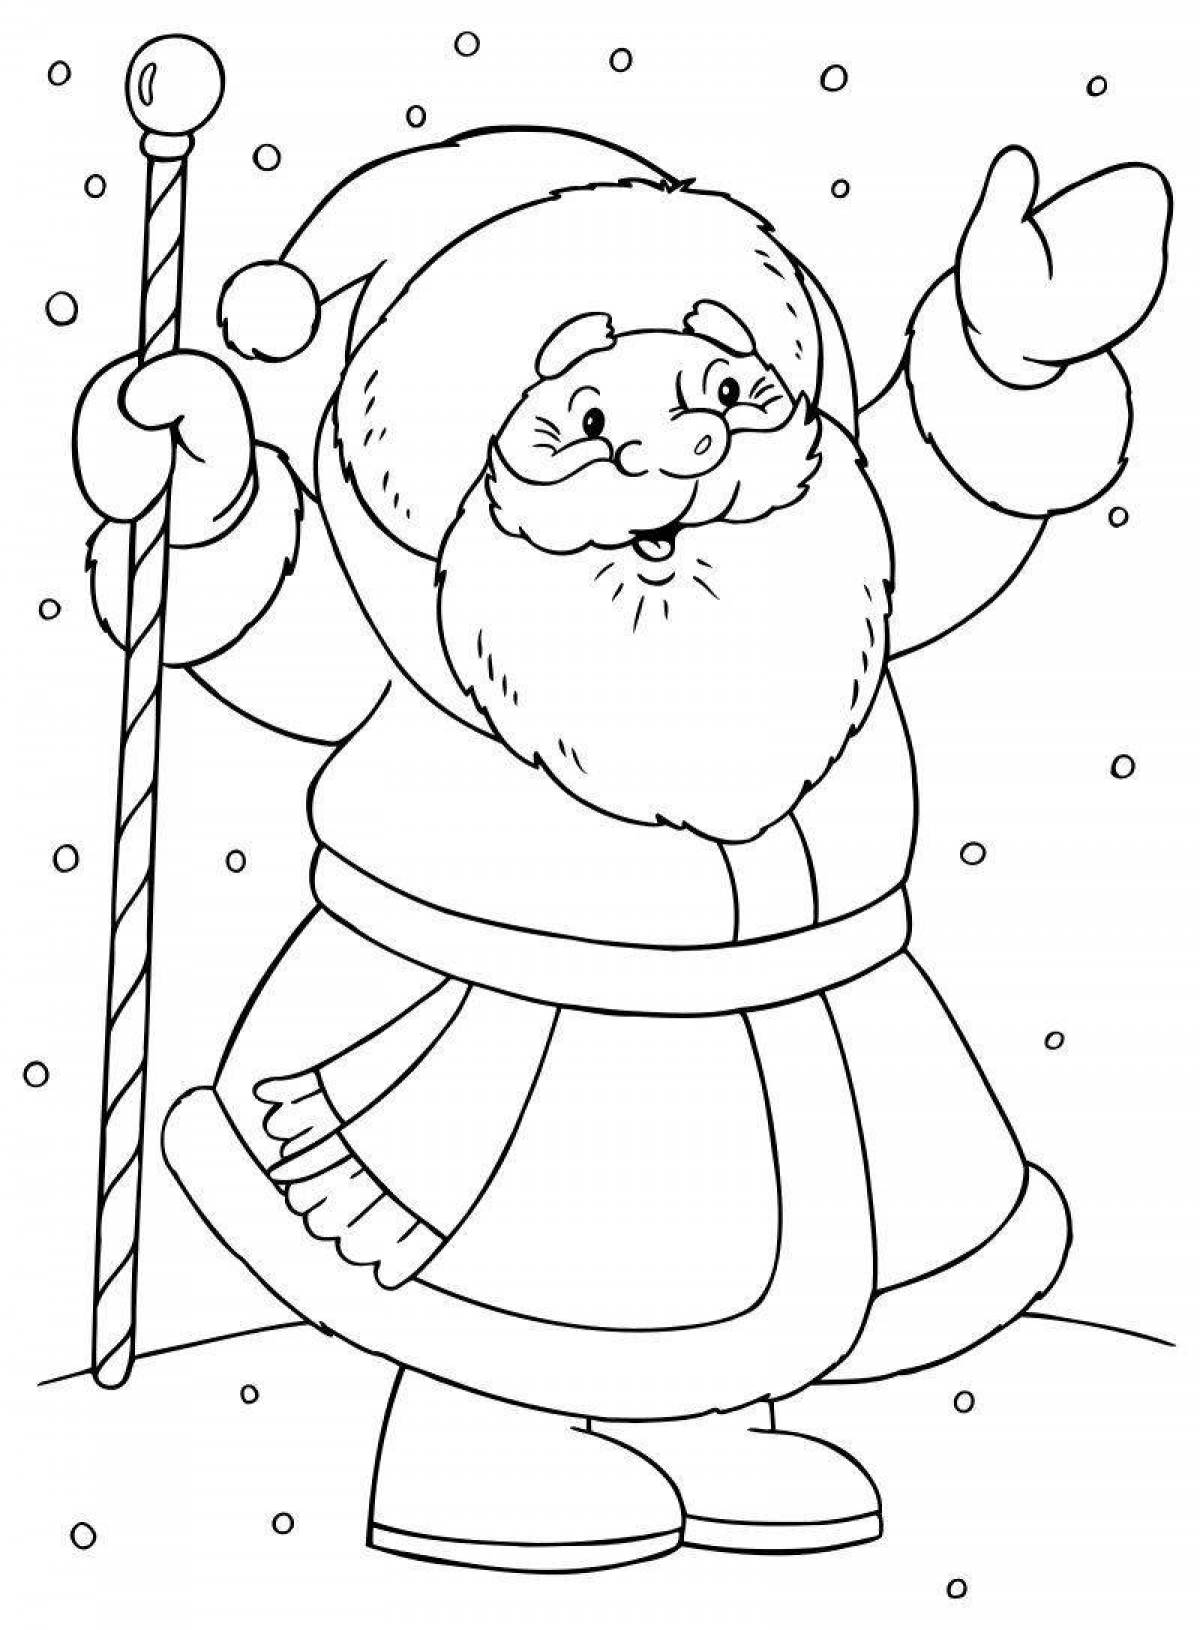 Adorable Santa Claus coloring book